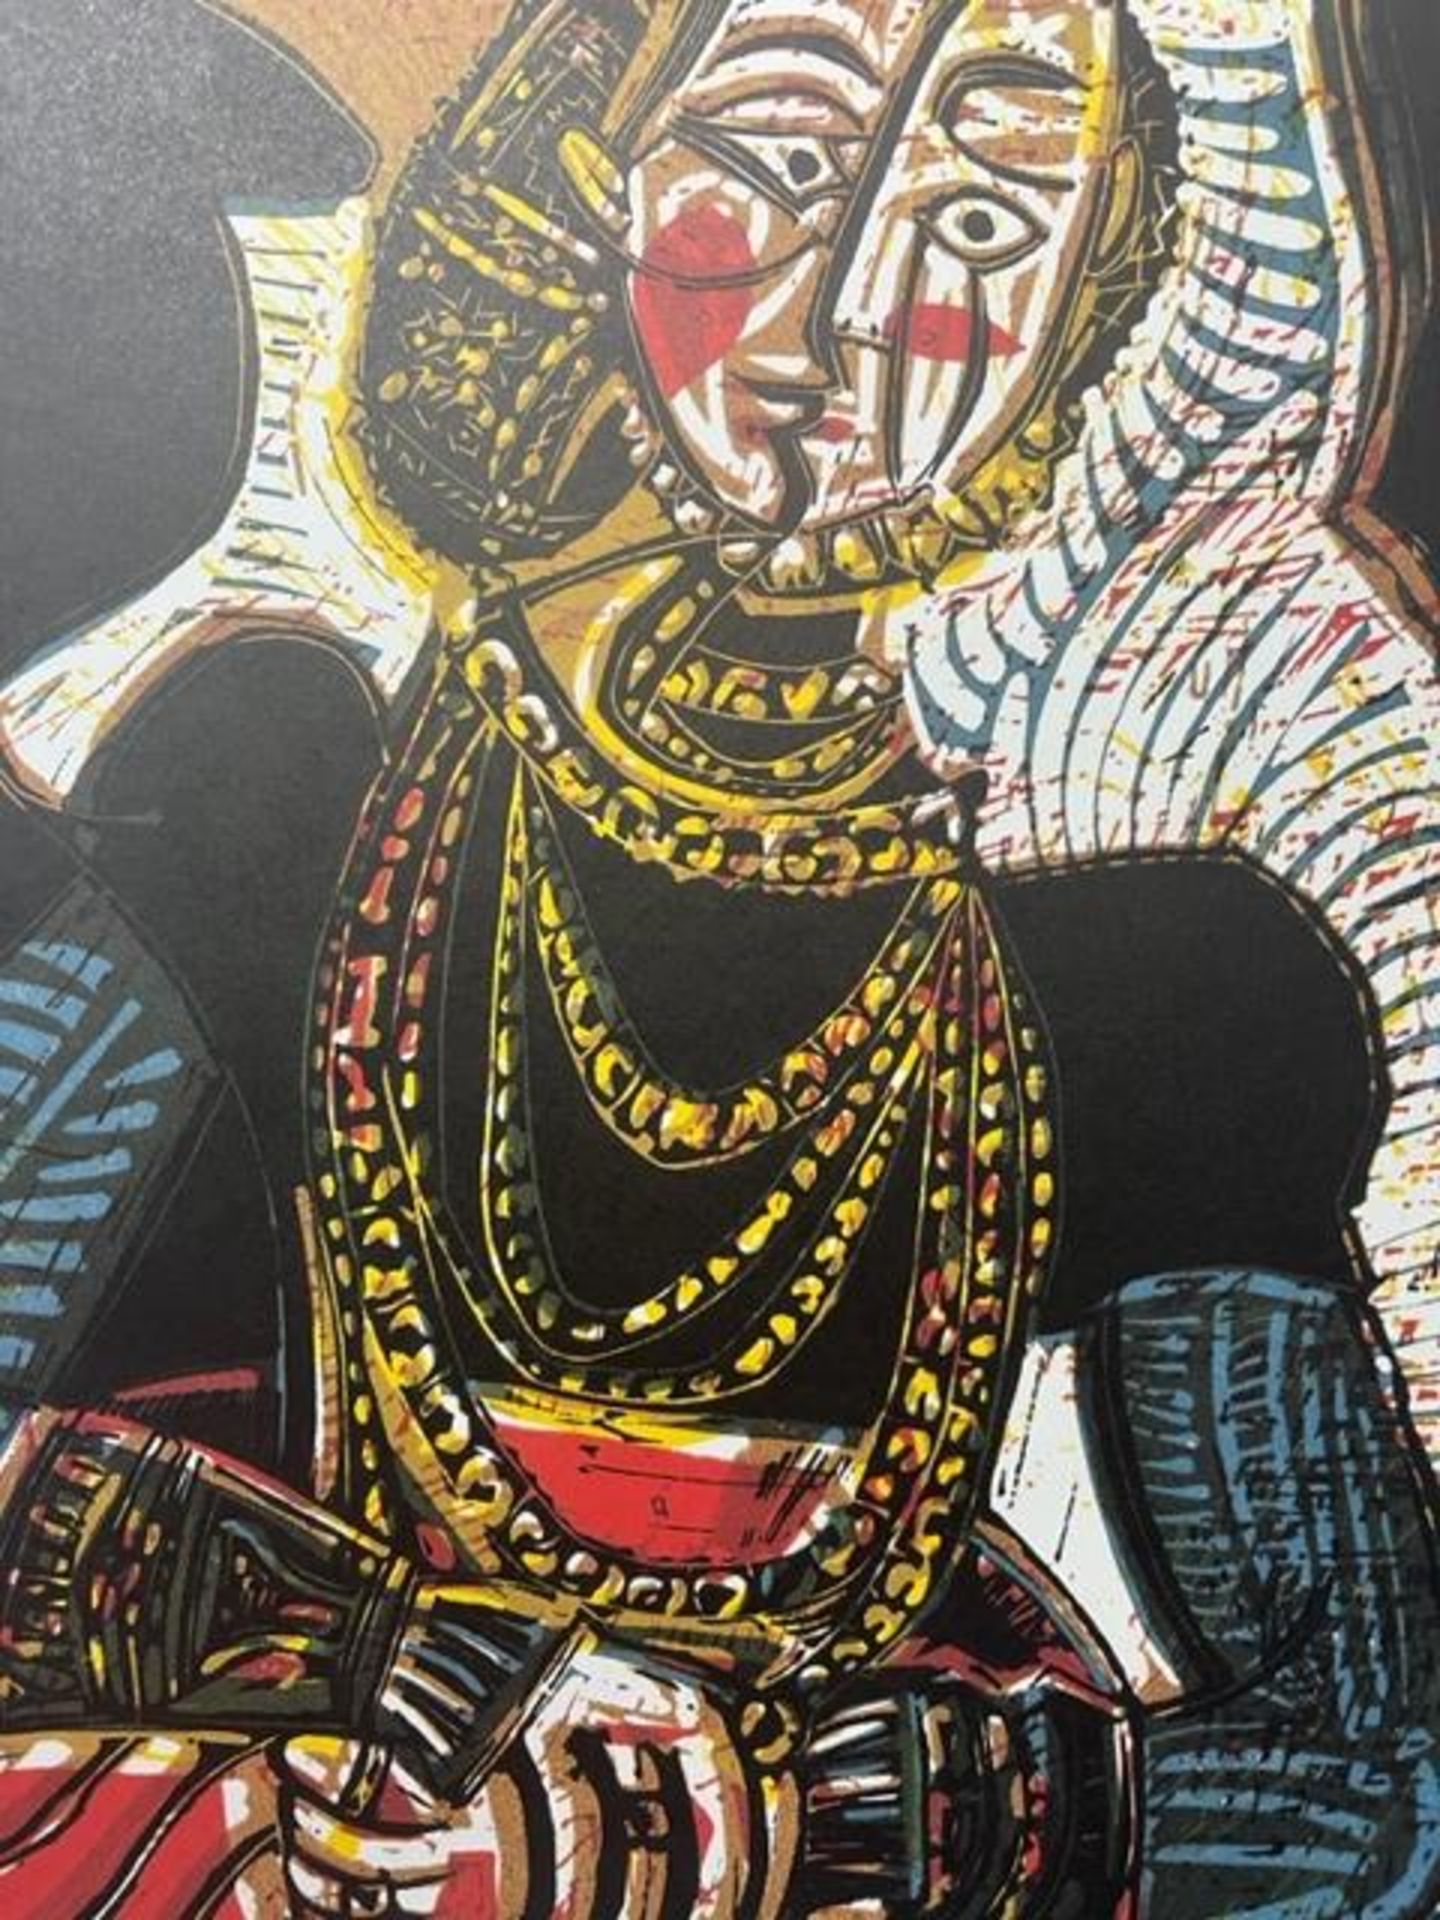 Pablo Picasso "Portrait of a Lady" Print. - Bild 6 aus 6